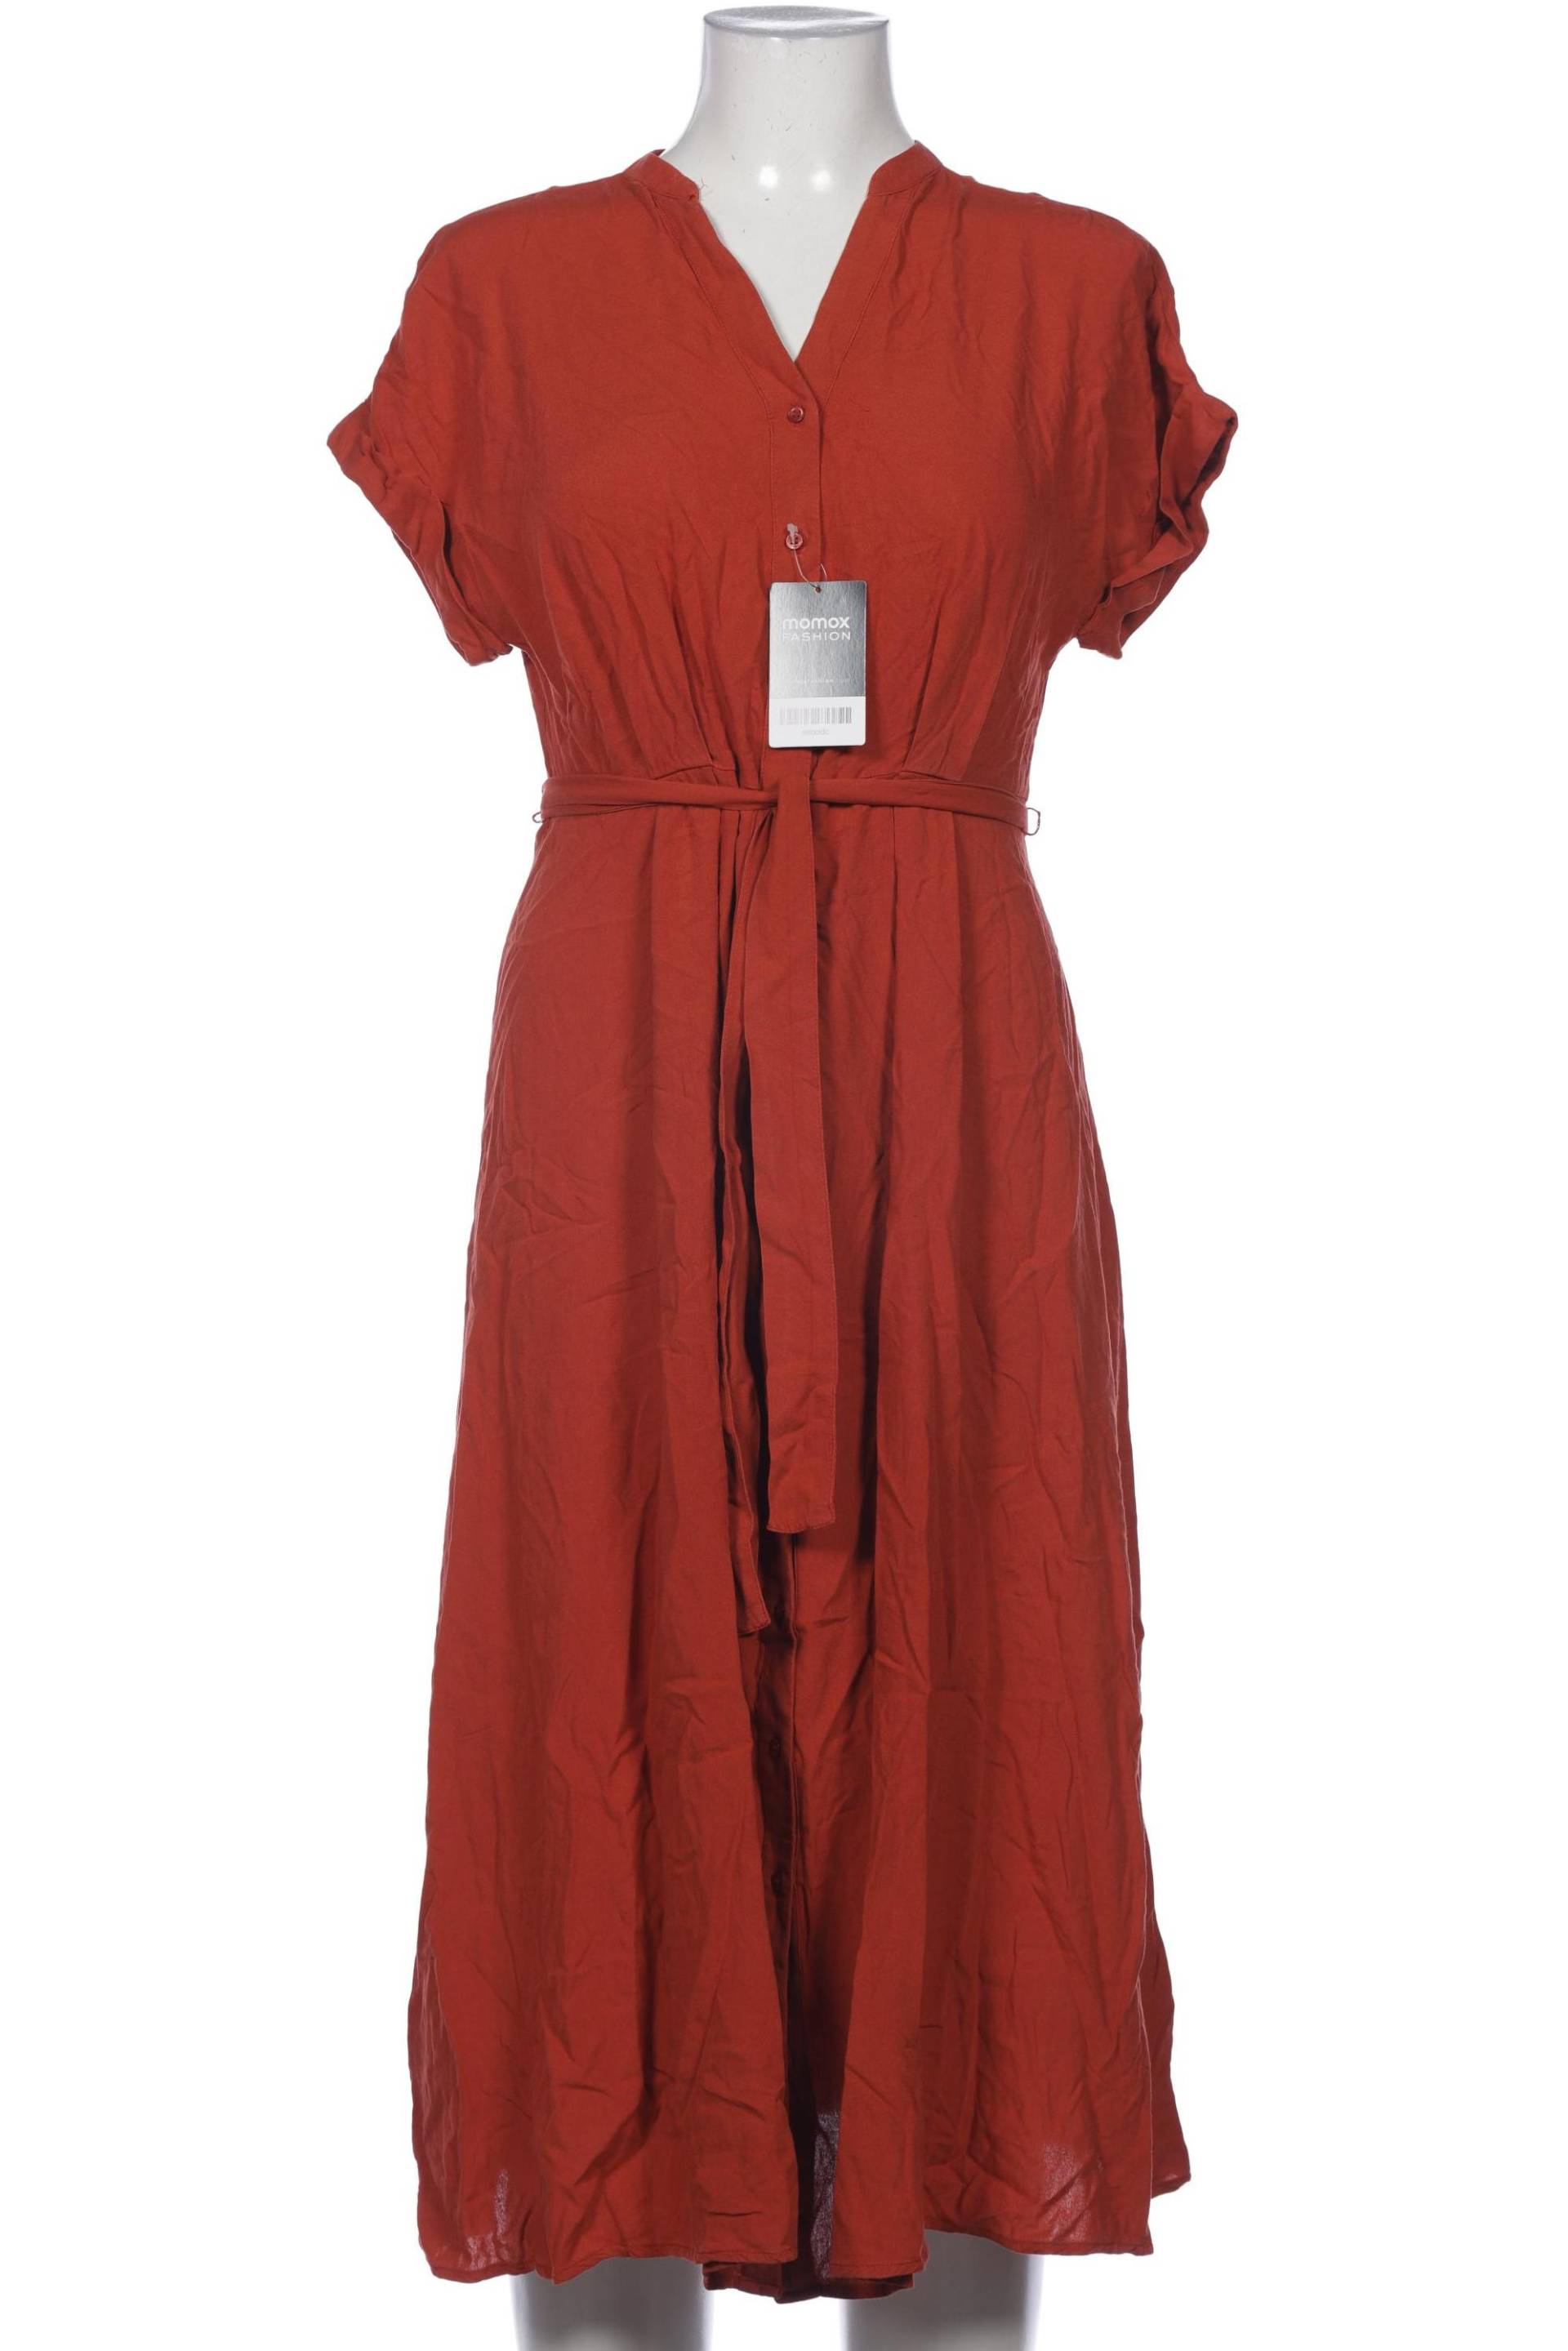 Tamaris Damen Kleid, rot, Gr. 36 von tamaris